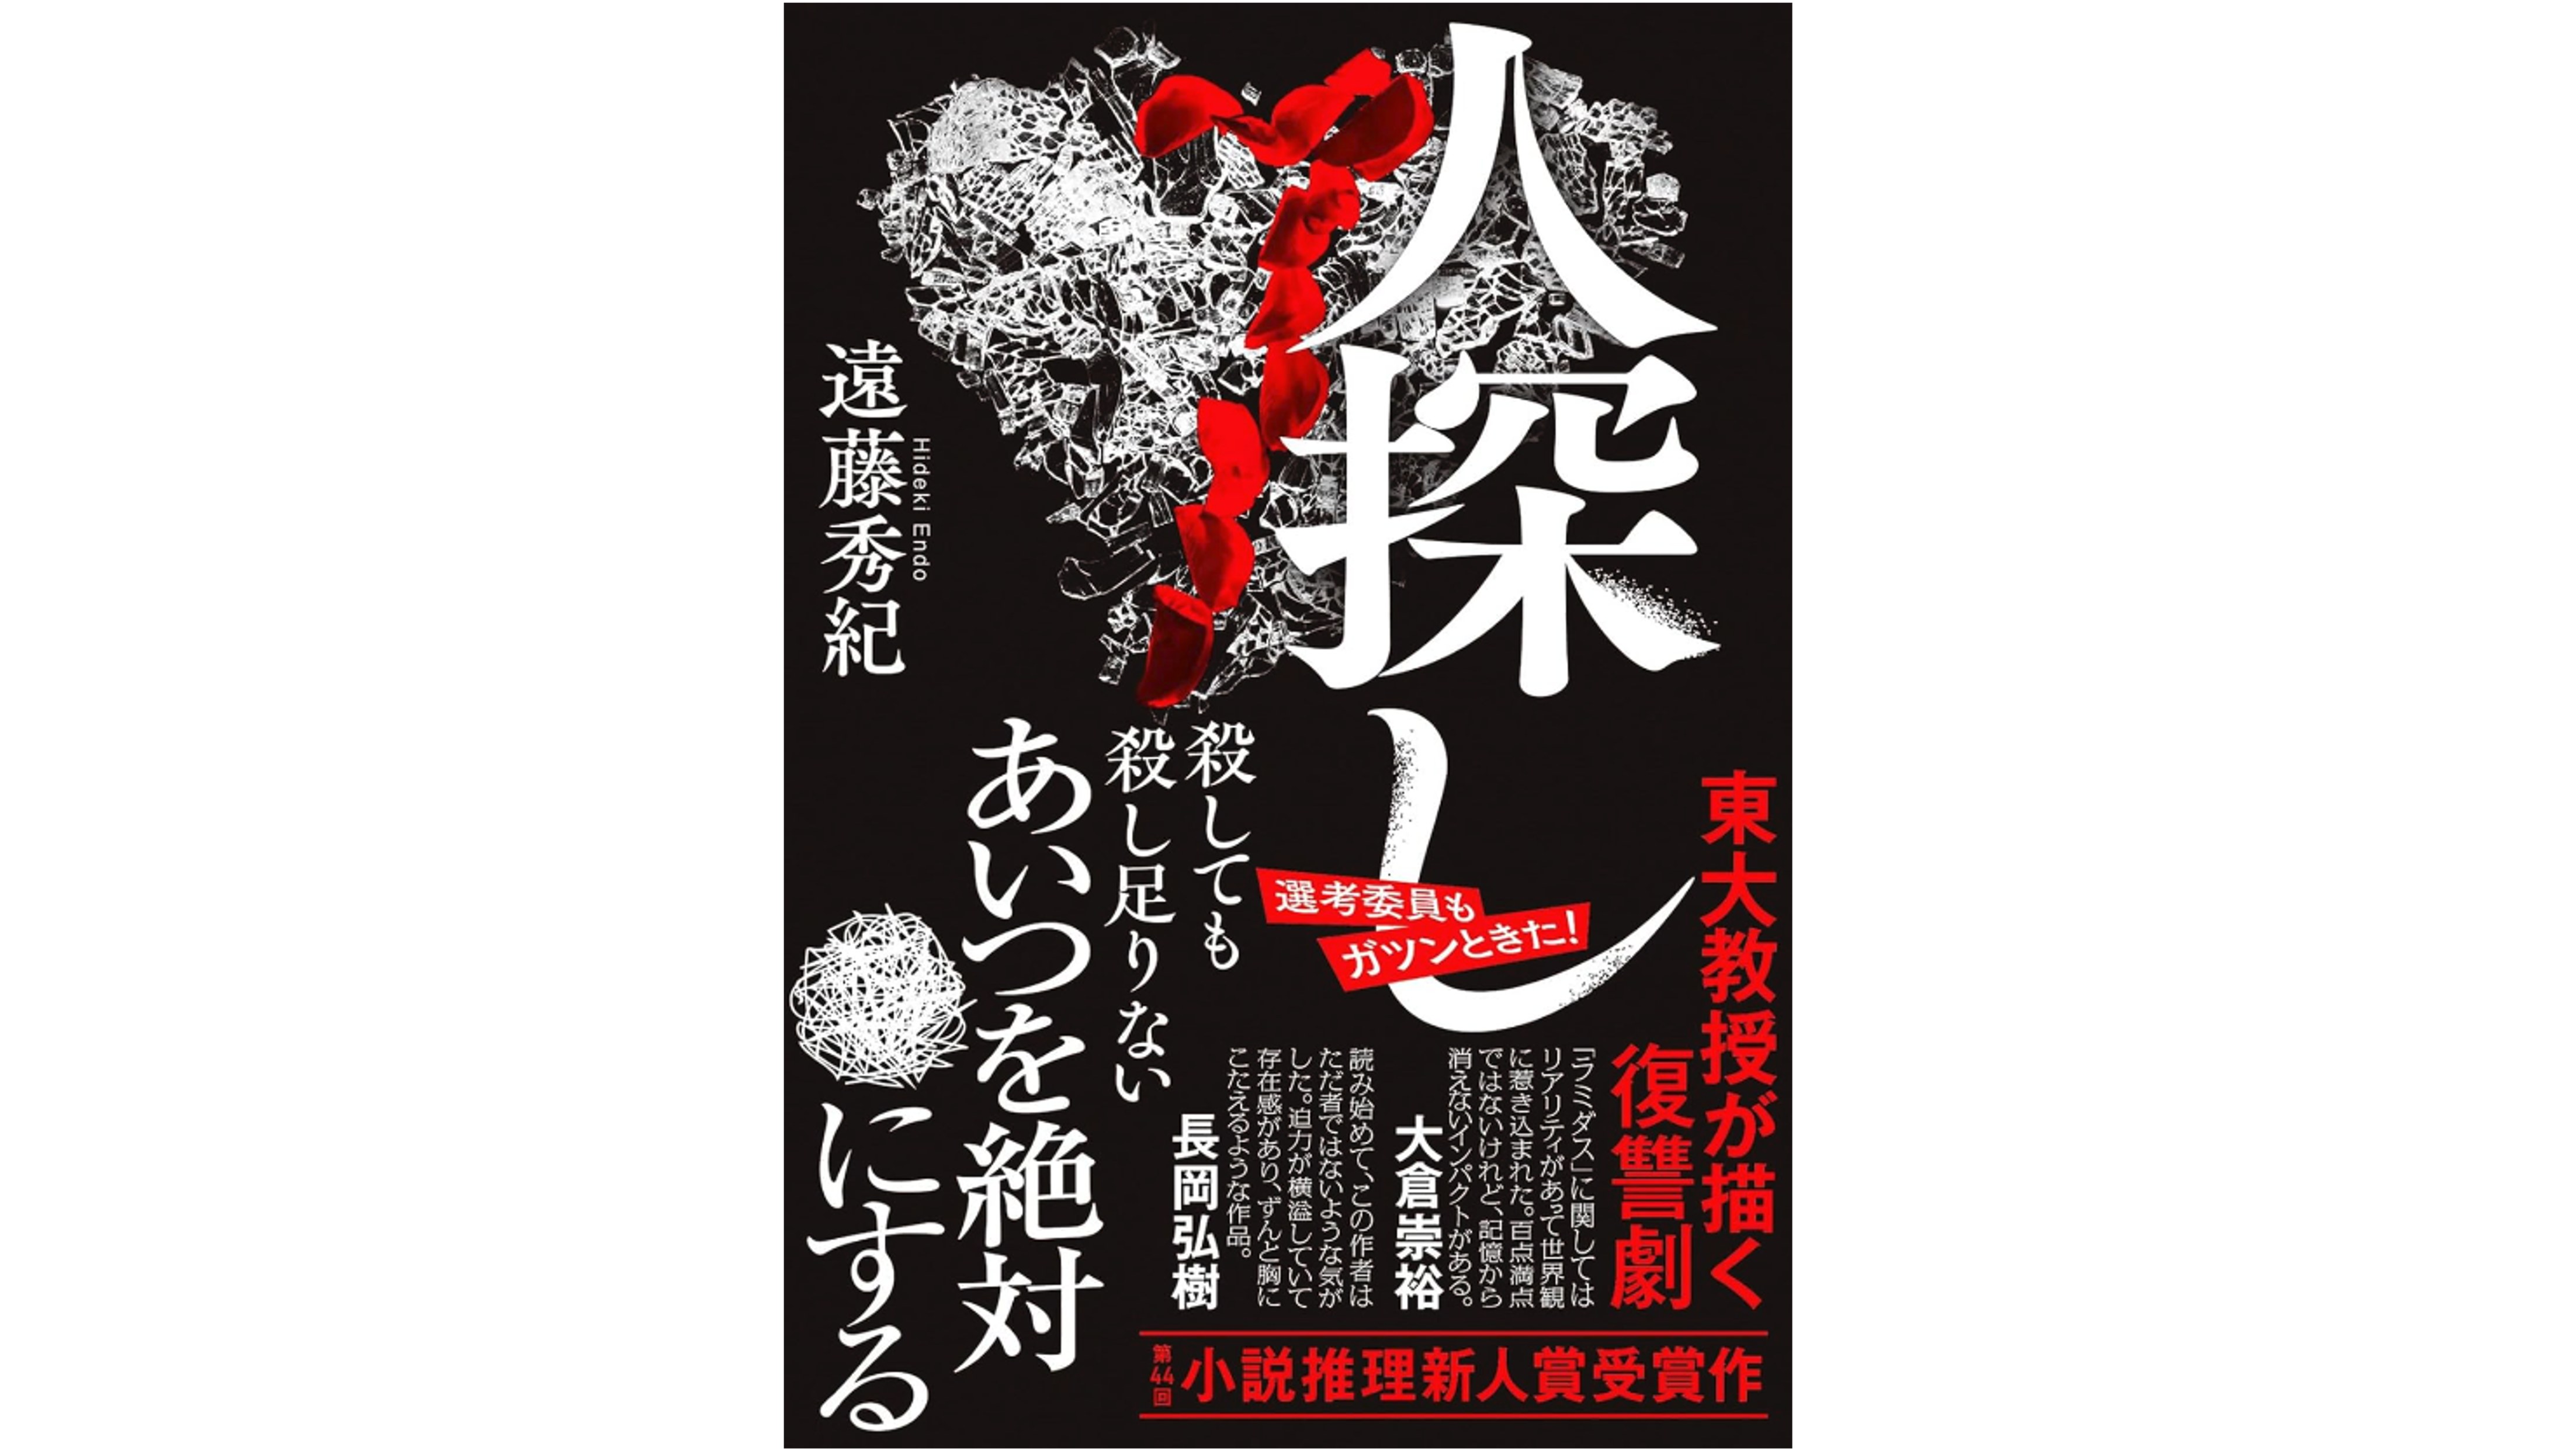 遠藤秀紀教授の第44回小説推理新人賞(双葉社)受賞作品「人探し」が販売されます